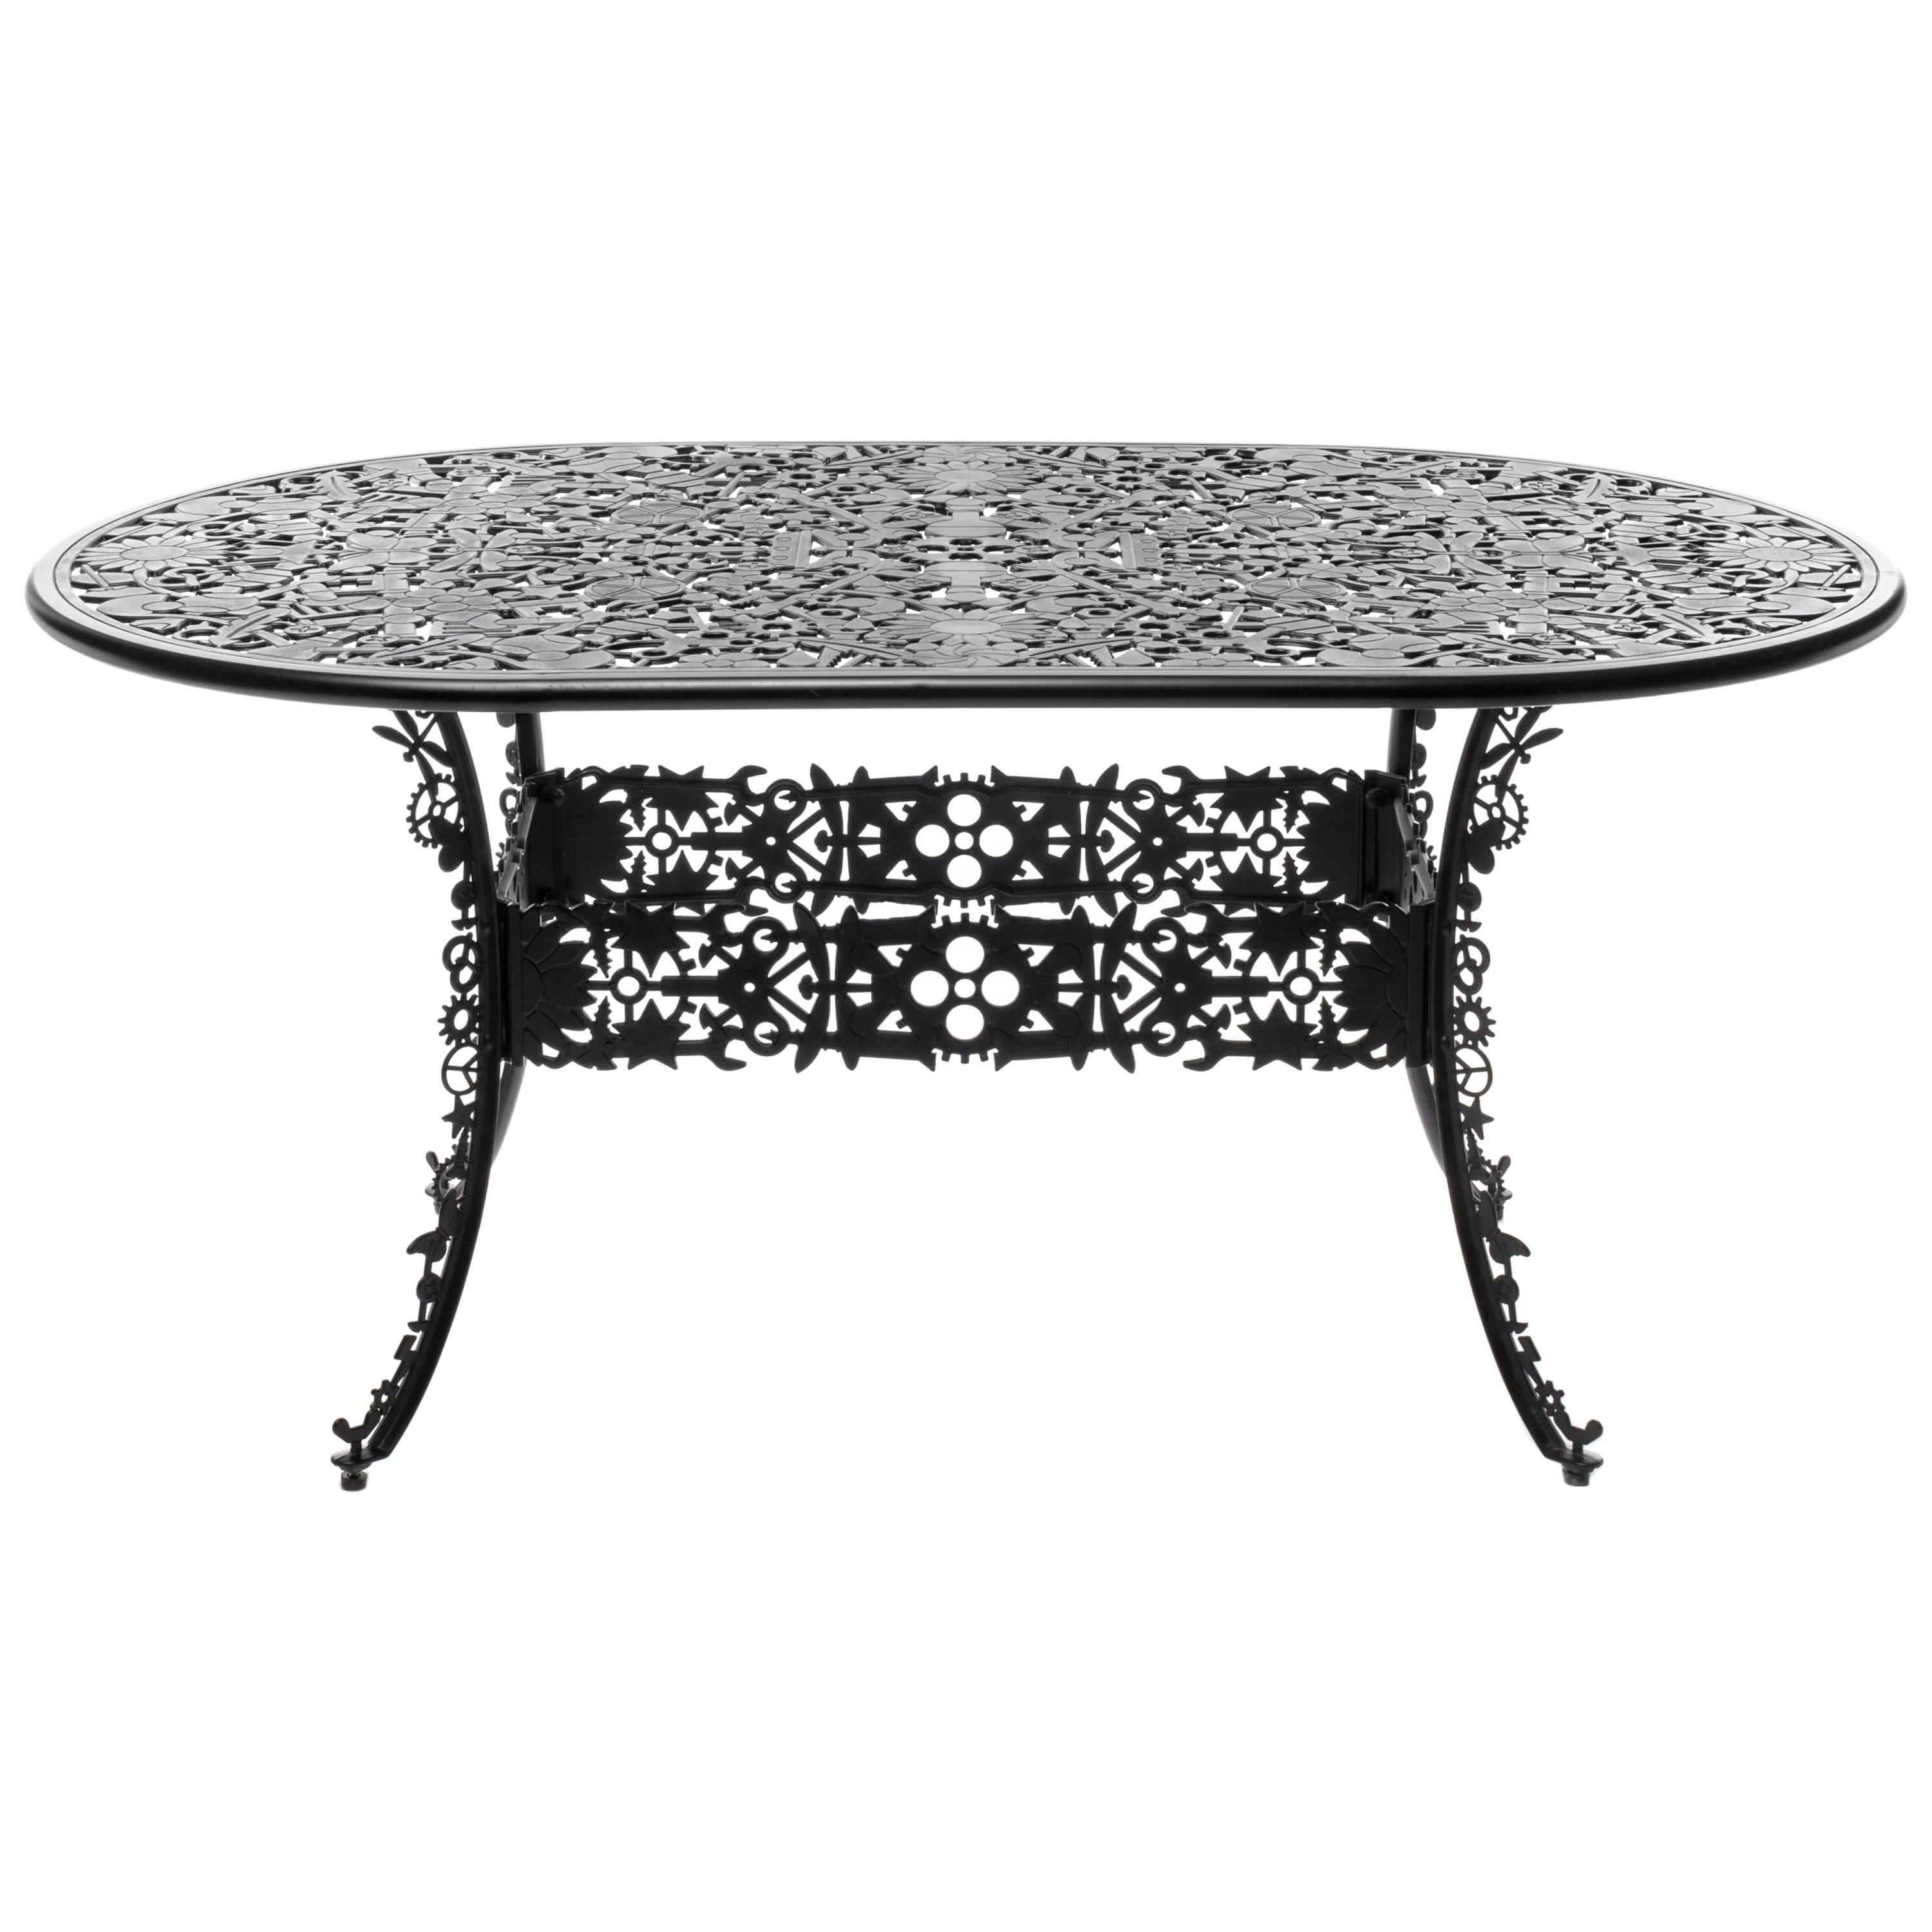 Table ovale en aluminium « Collection d'industrie » de Seletti, noire